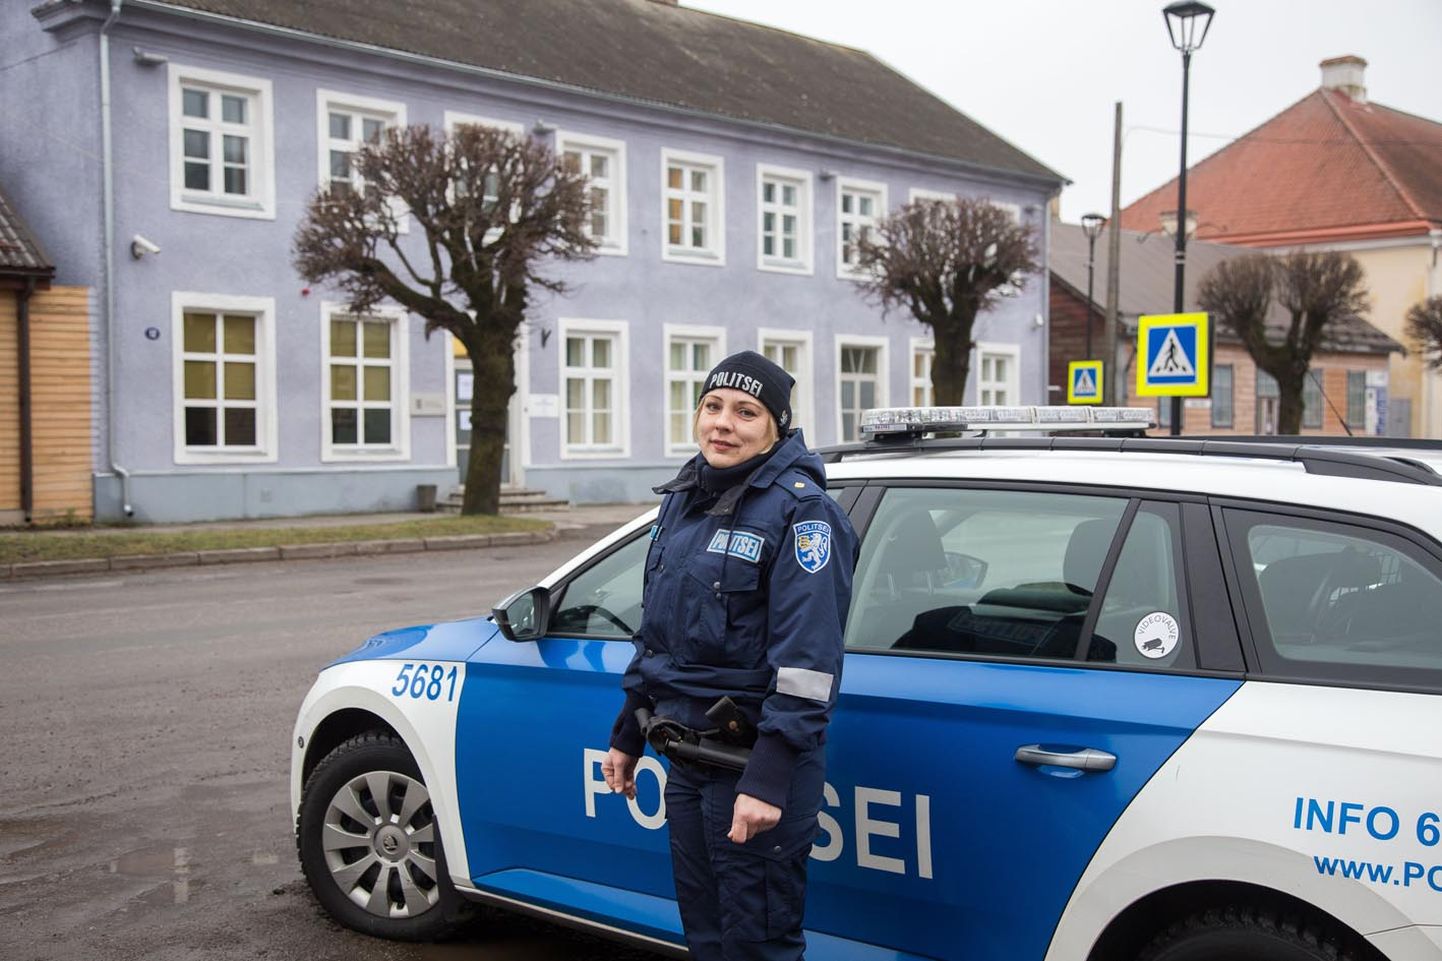 Helen Sopp on üks uutest piirkonnapolitseinikest, kes sai koha Järvamaale. Koos Mati Seirega jagavad nad tööpiirkonda Järva vallas.